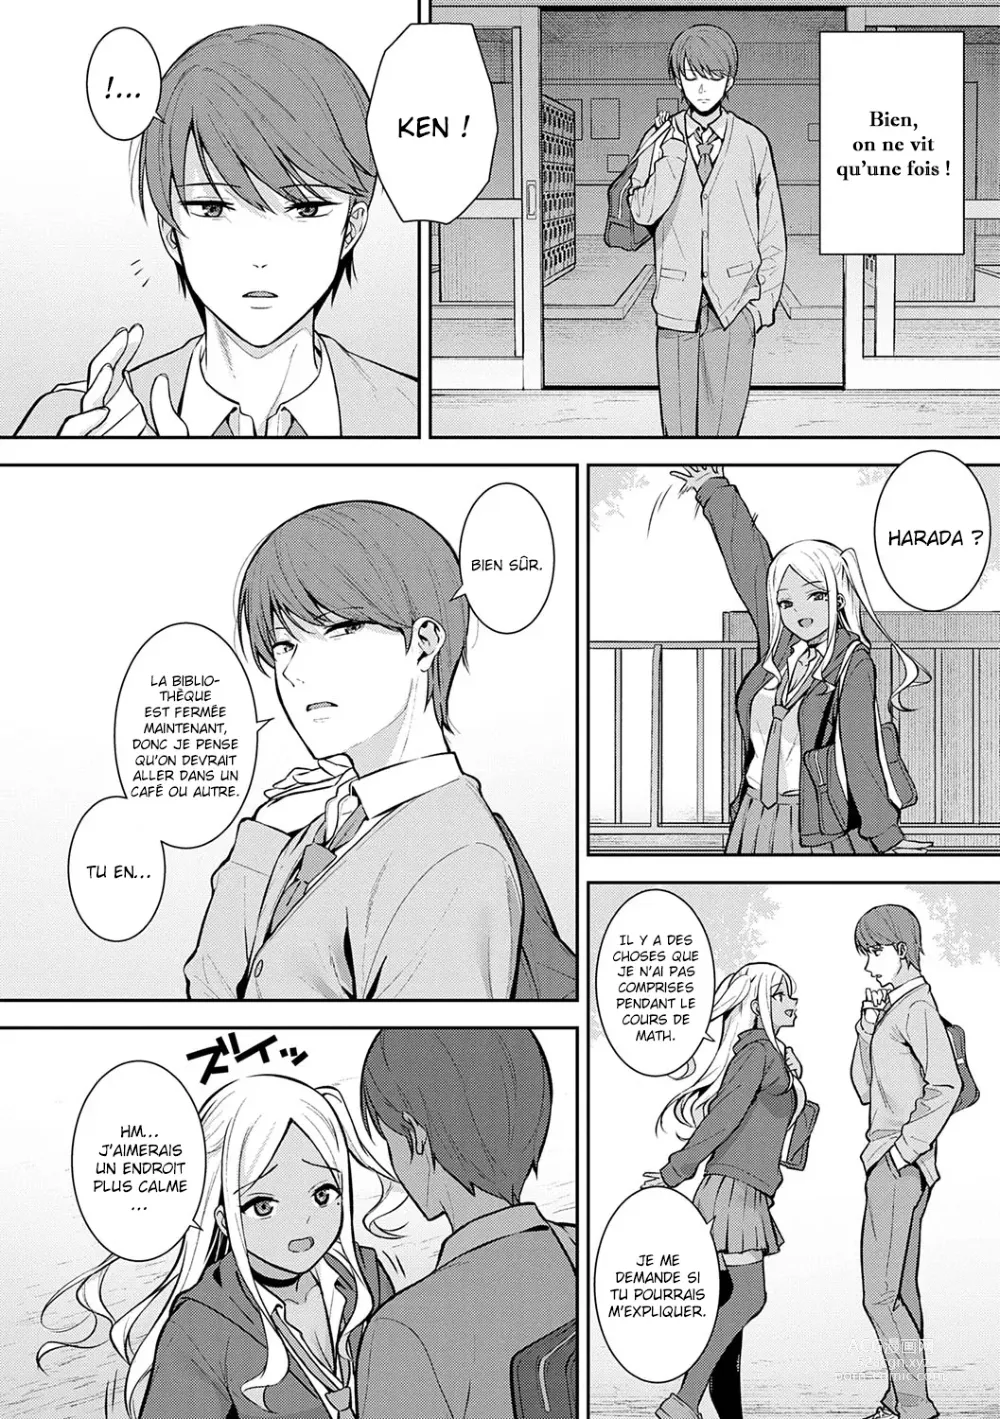 Page 4 of manga La saison des cerisiers